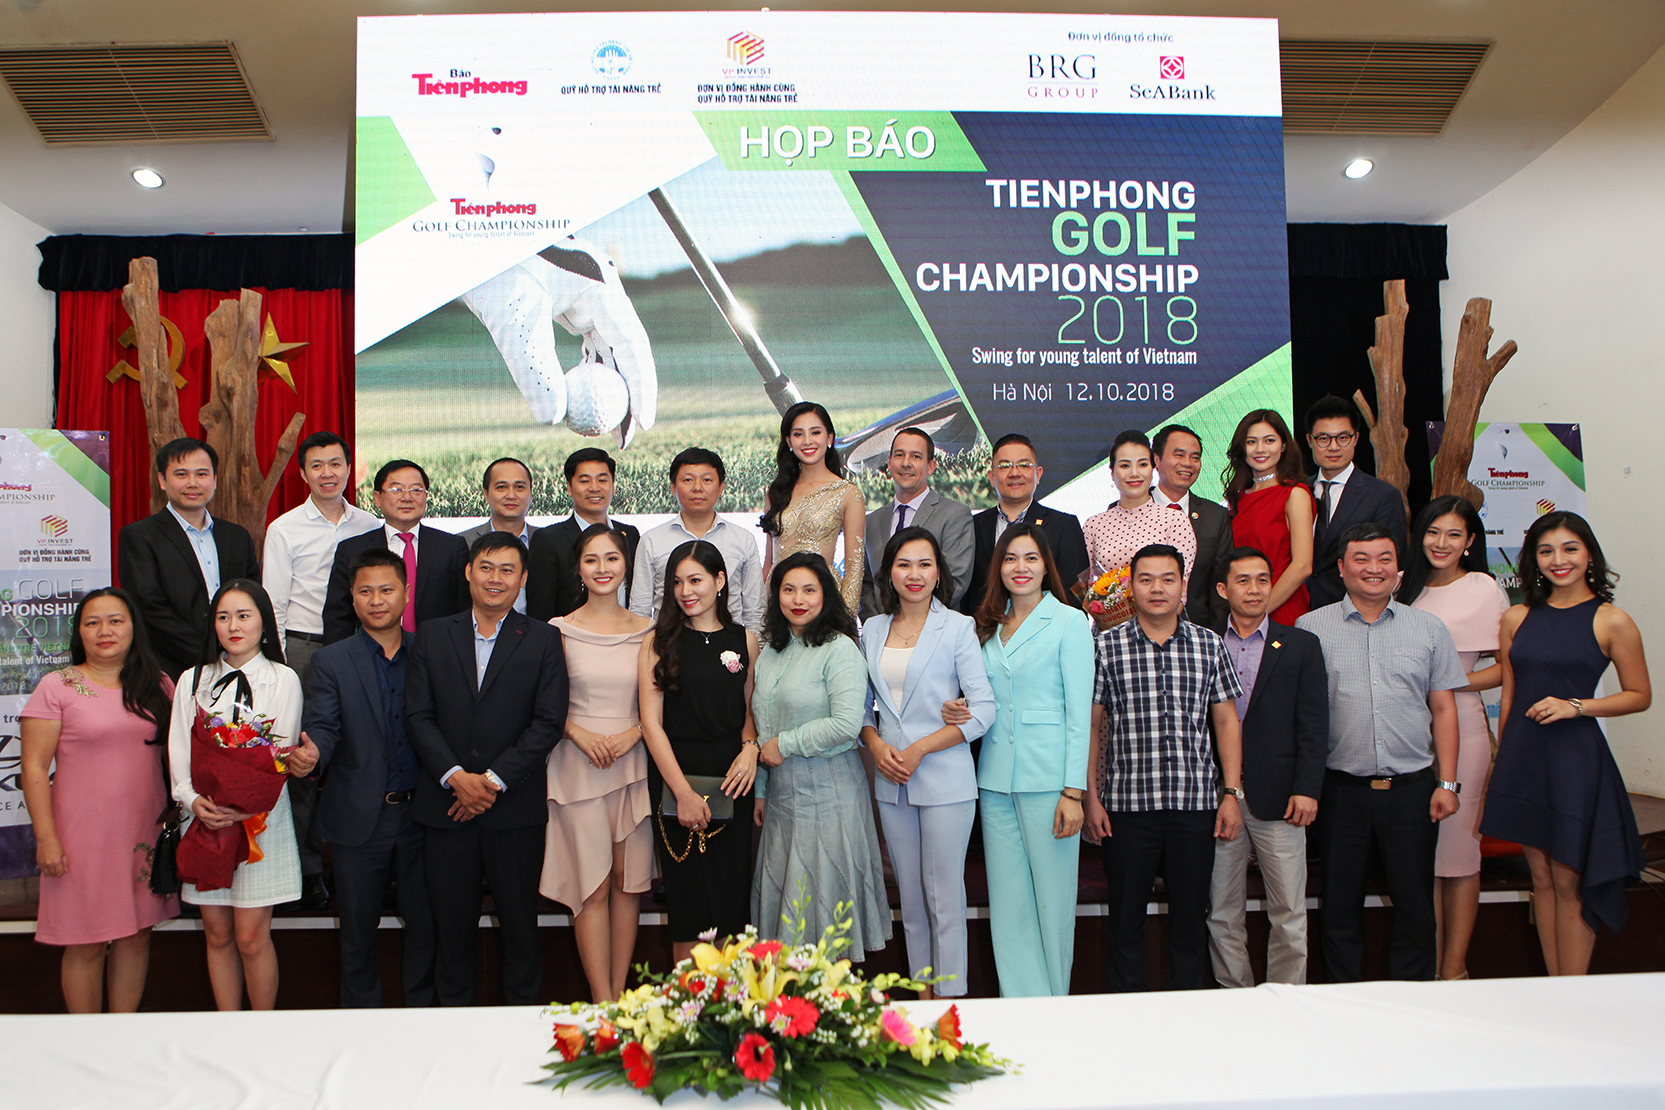 Hoa hậu Trần Tiểu Vy - Đại diện hình ảnh cho giải Tiền Phong golf Championship 2018